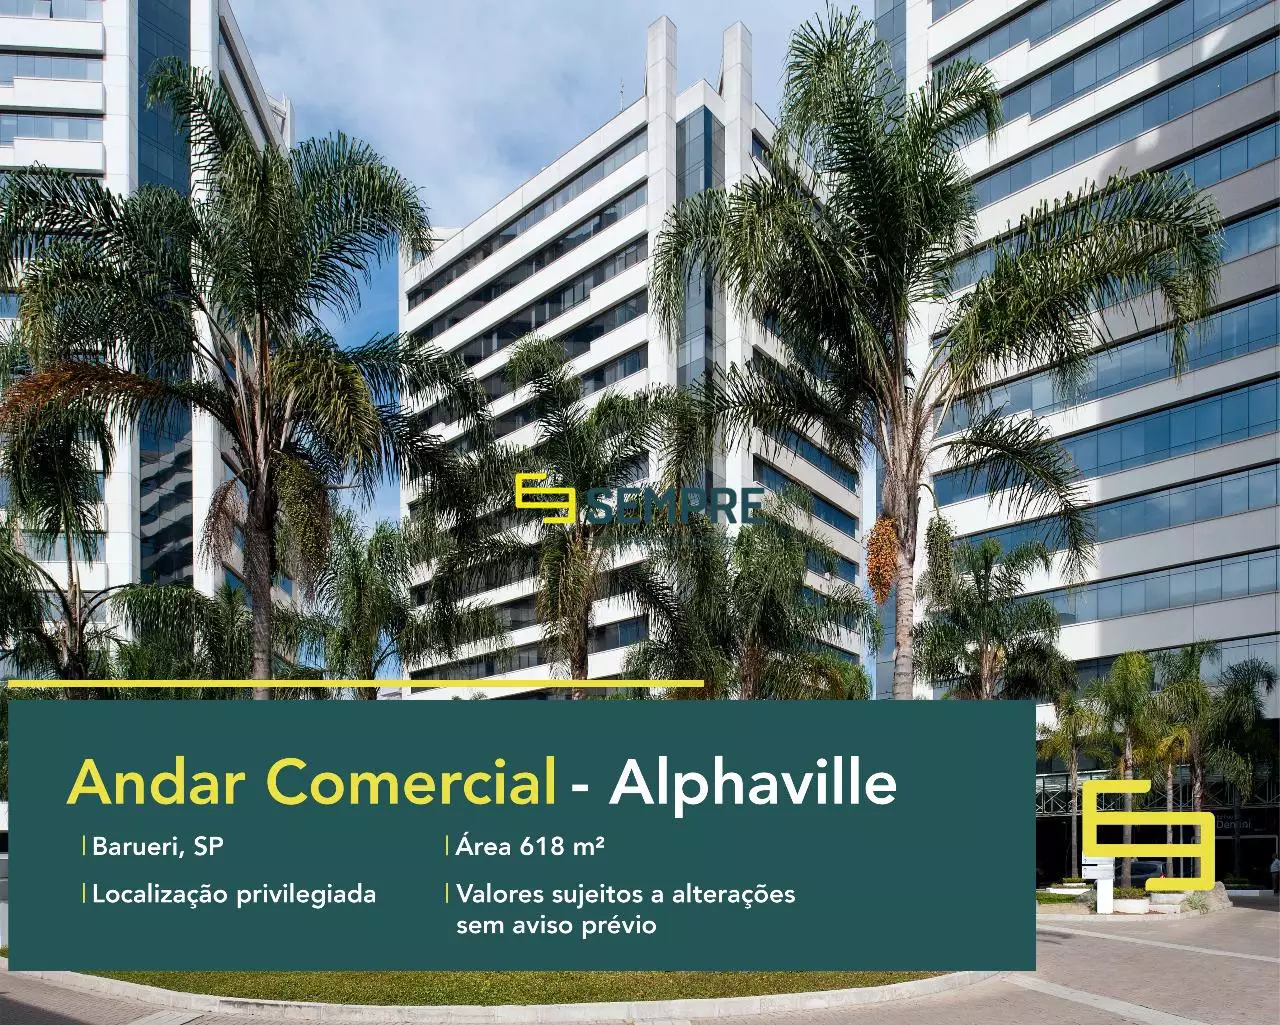 Andar comercial no CA Rio Negro para locação - Alphaville, excelente localização. O estabelecimento comercial conta com área de 618,99 m².